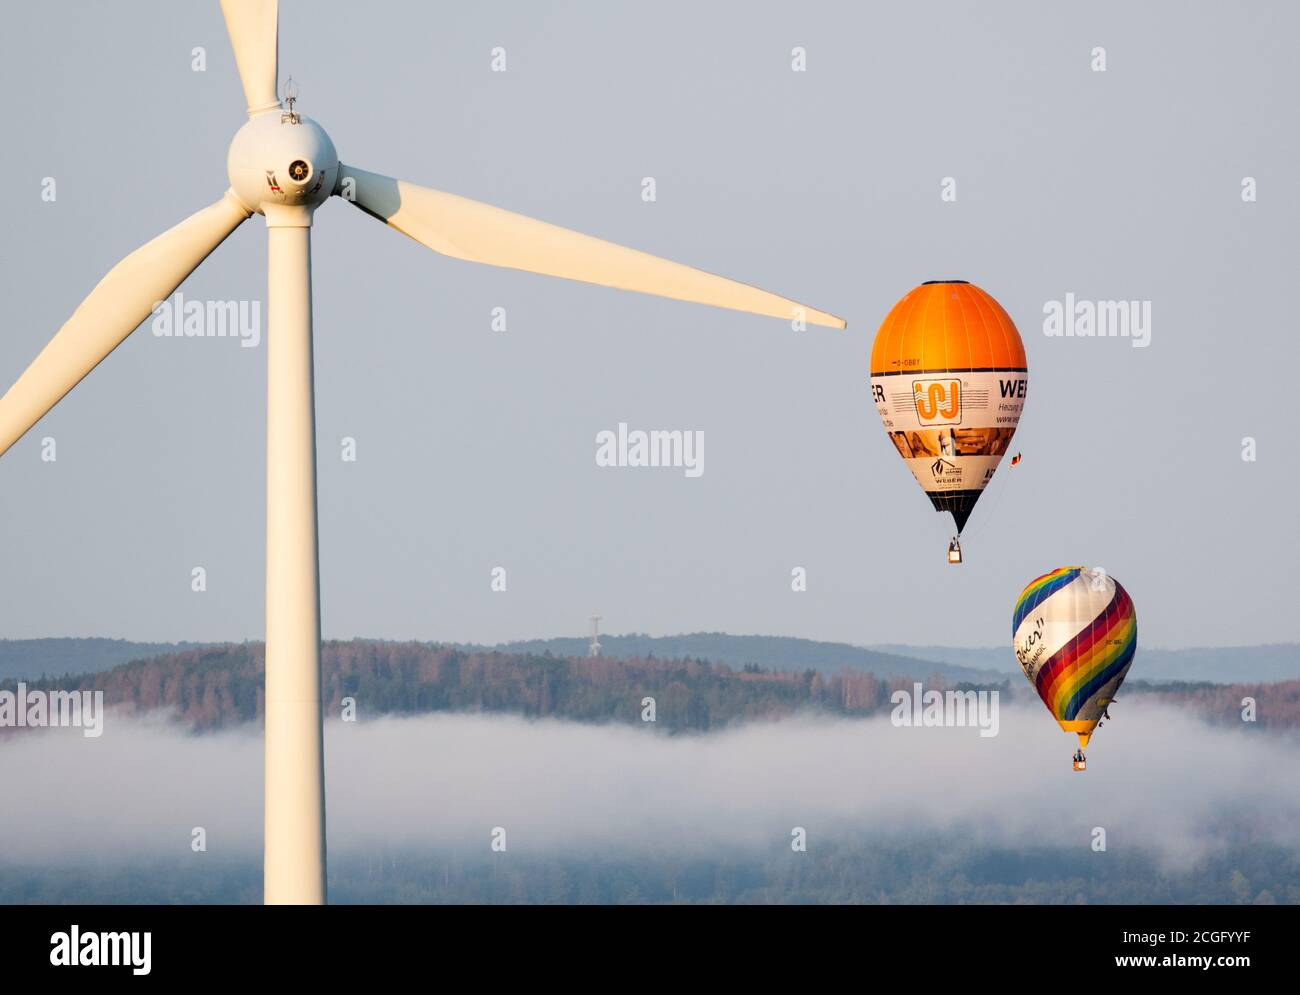 11 septembre 2020, Rhénanie-du-Nord-Westphalie, Möhnesee : deux ballons à  air chaud survolent une éolienne au-dessus du brouillard matinal. Après un  lancement en extérieur, plus de 20 ballons avaient été retirés de sites